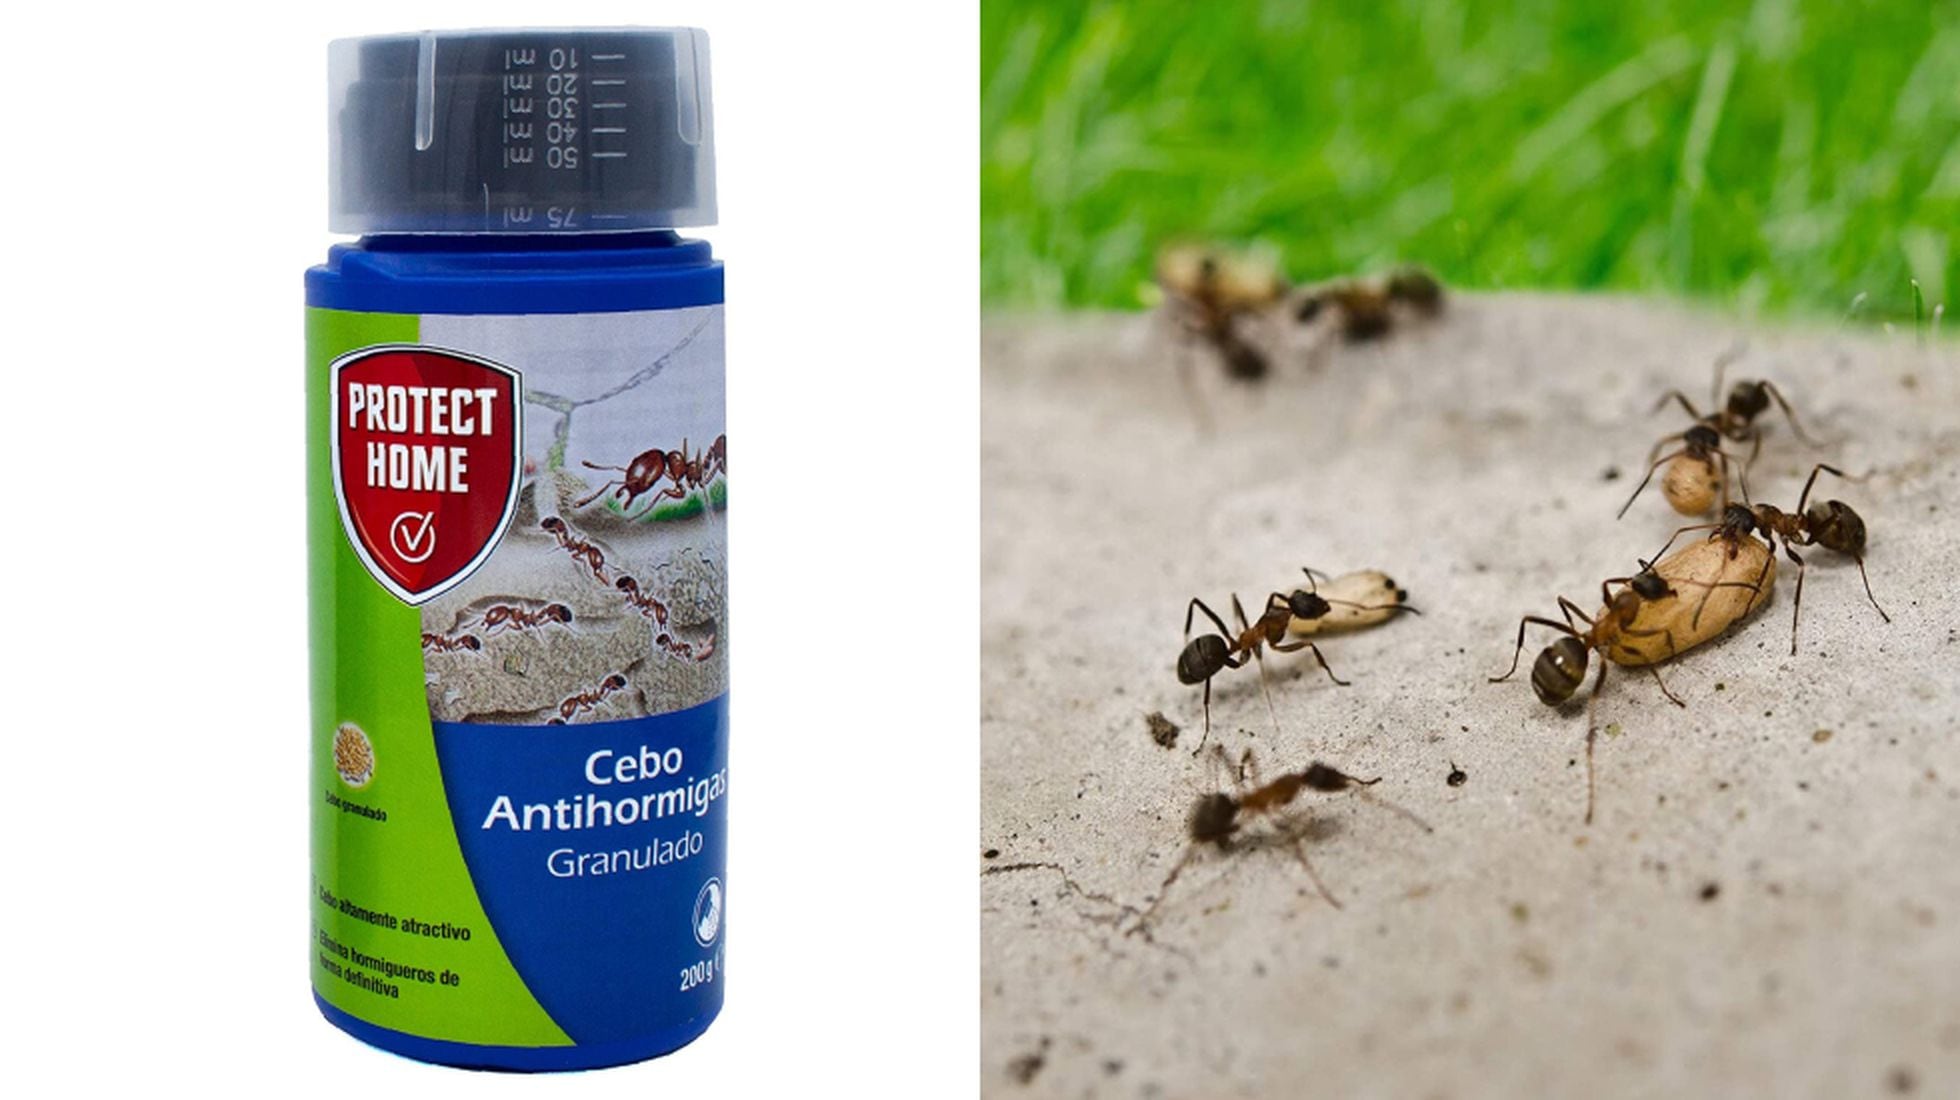 12 insecticidas y repelentes baratos para con las hormigas en casa durante el verano | Escaparate | EL PAÍS